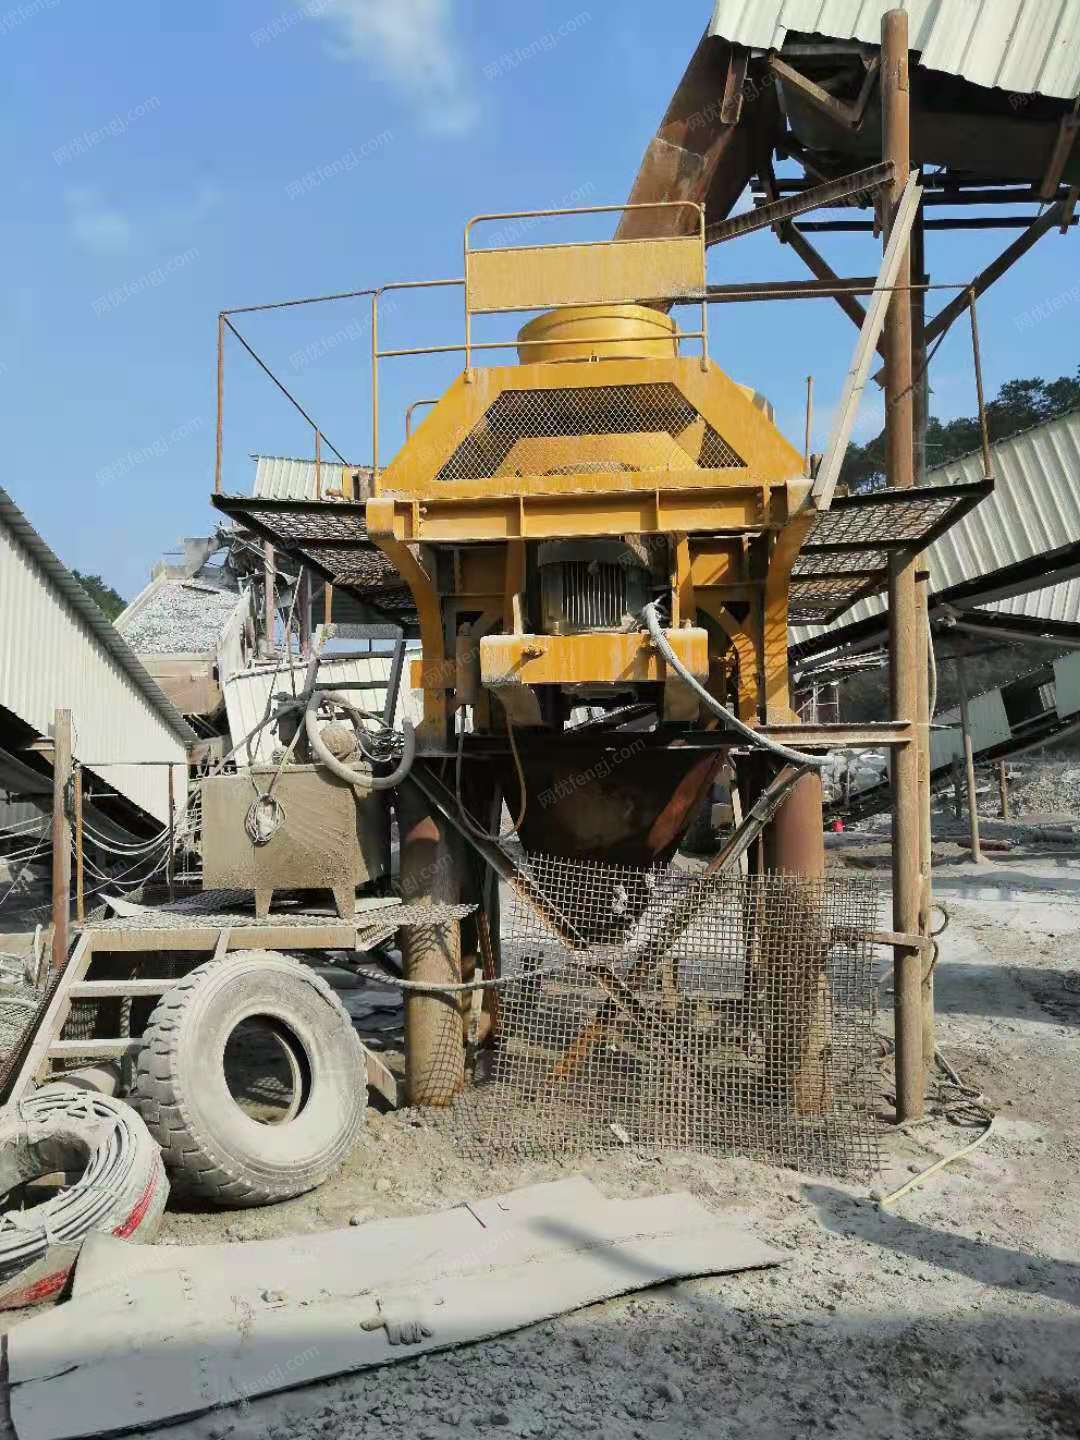 （3-4天后再联系）石料加工厂就近出售制砂机1台，设备在广西贵港